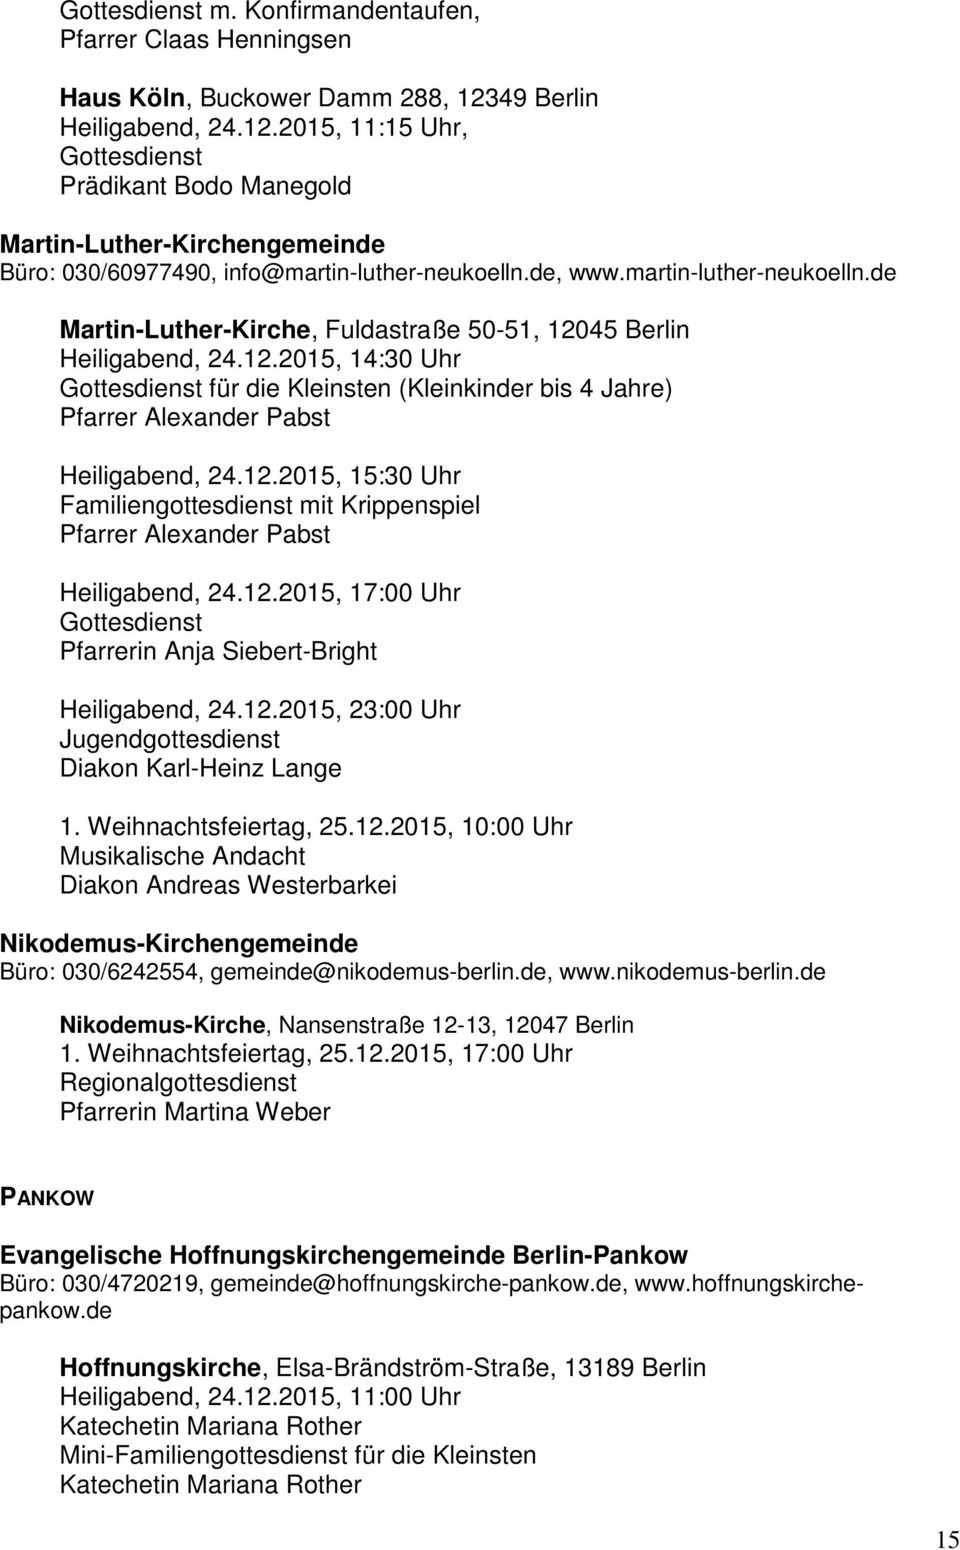 de, www.martin-luther-neukoelln.de Martin-Luther-Kirche, Fuldastraße 50-51, 12045 Berlin Heiligabend, 24.12.2015, 14:30 Uhr für die Kleinsten (Kleinkinder bis 4 Jahre) Pfarrer Alexander Pabst Heiligabend, 24.